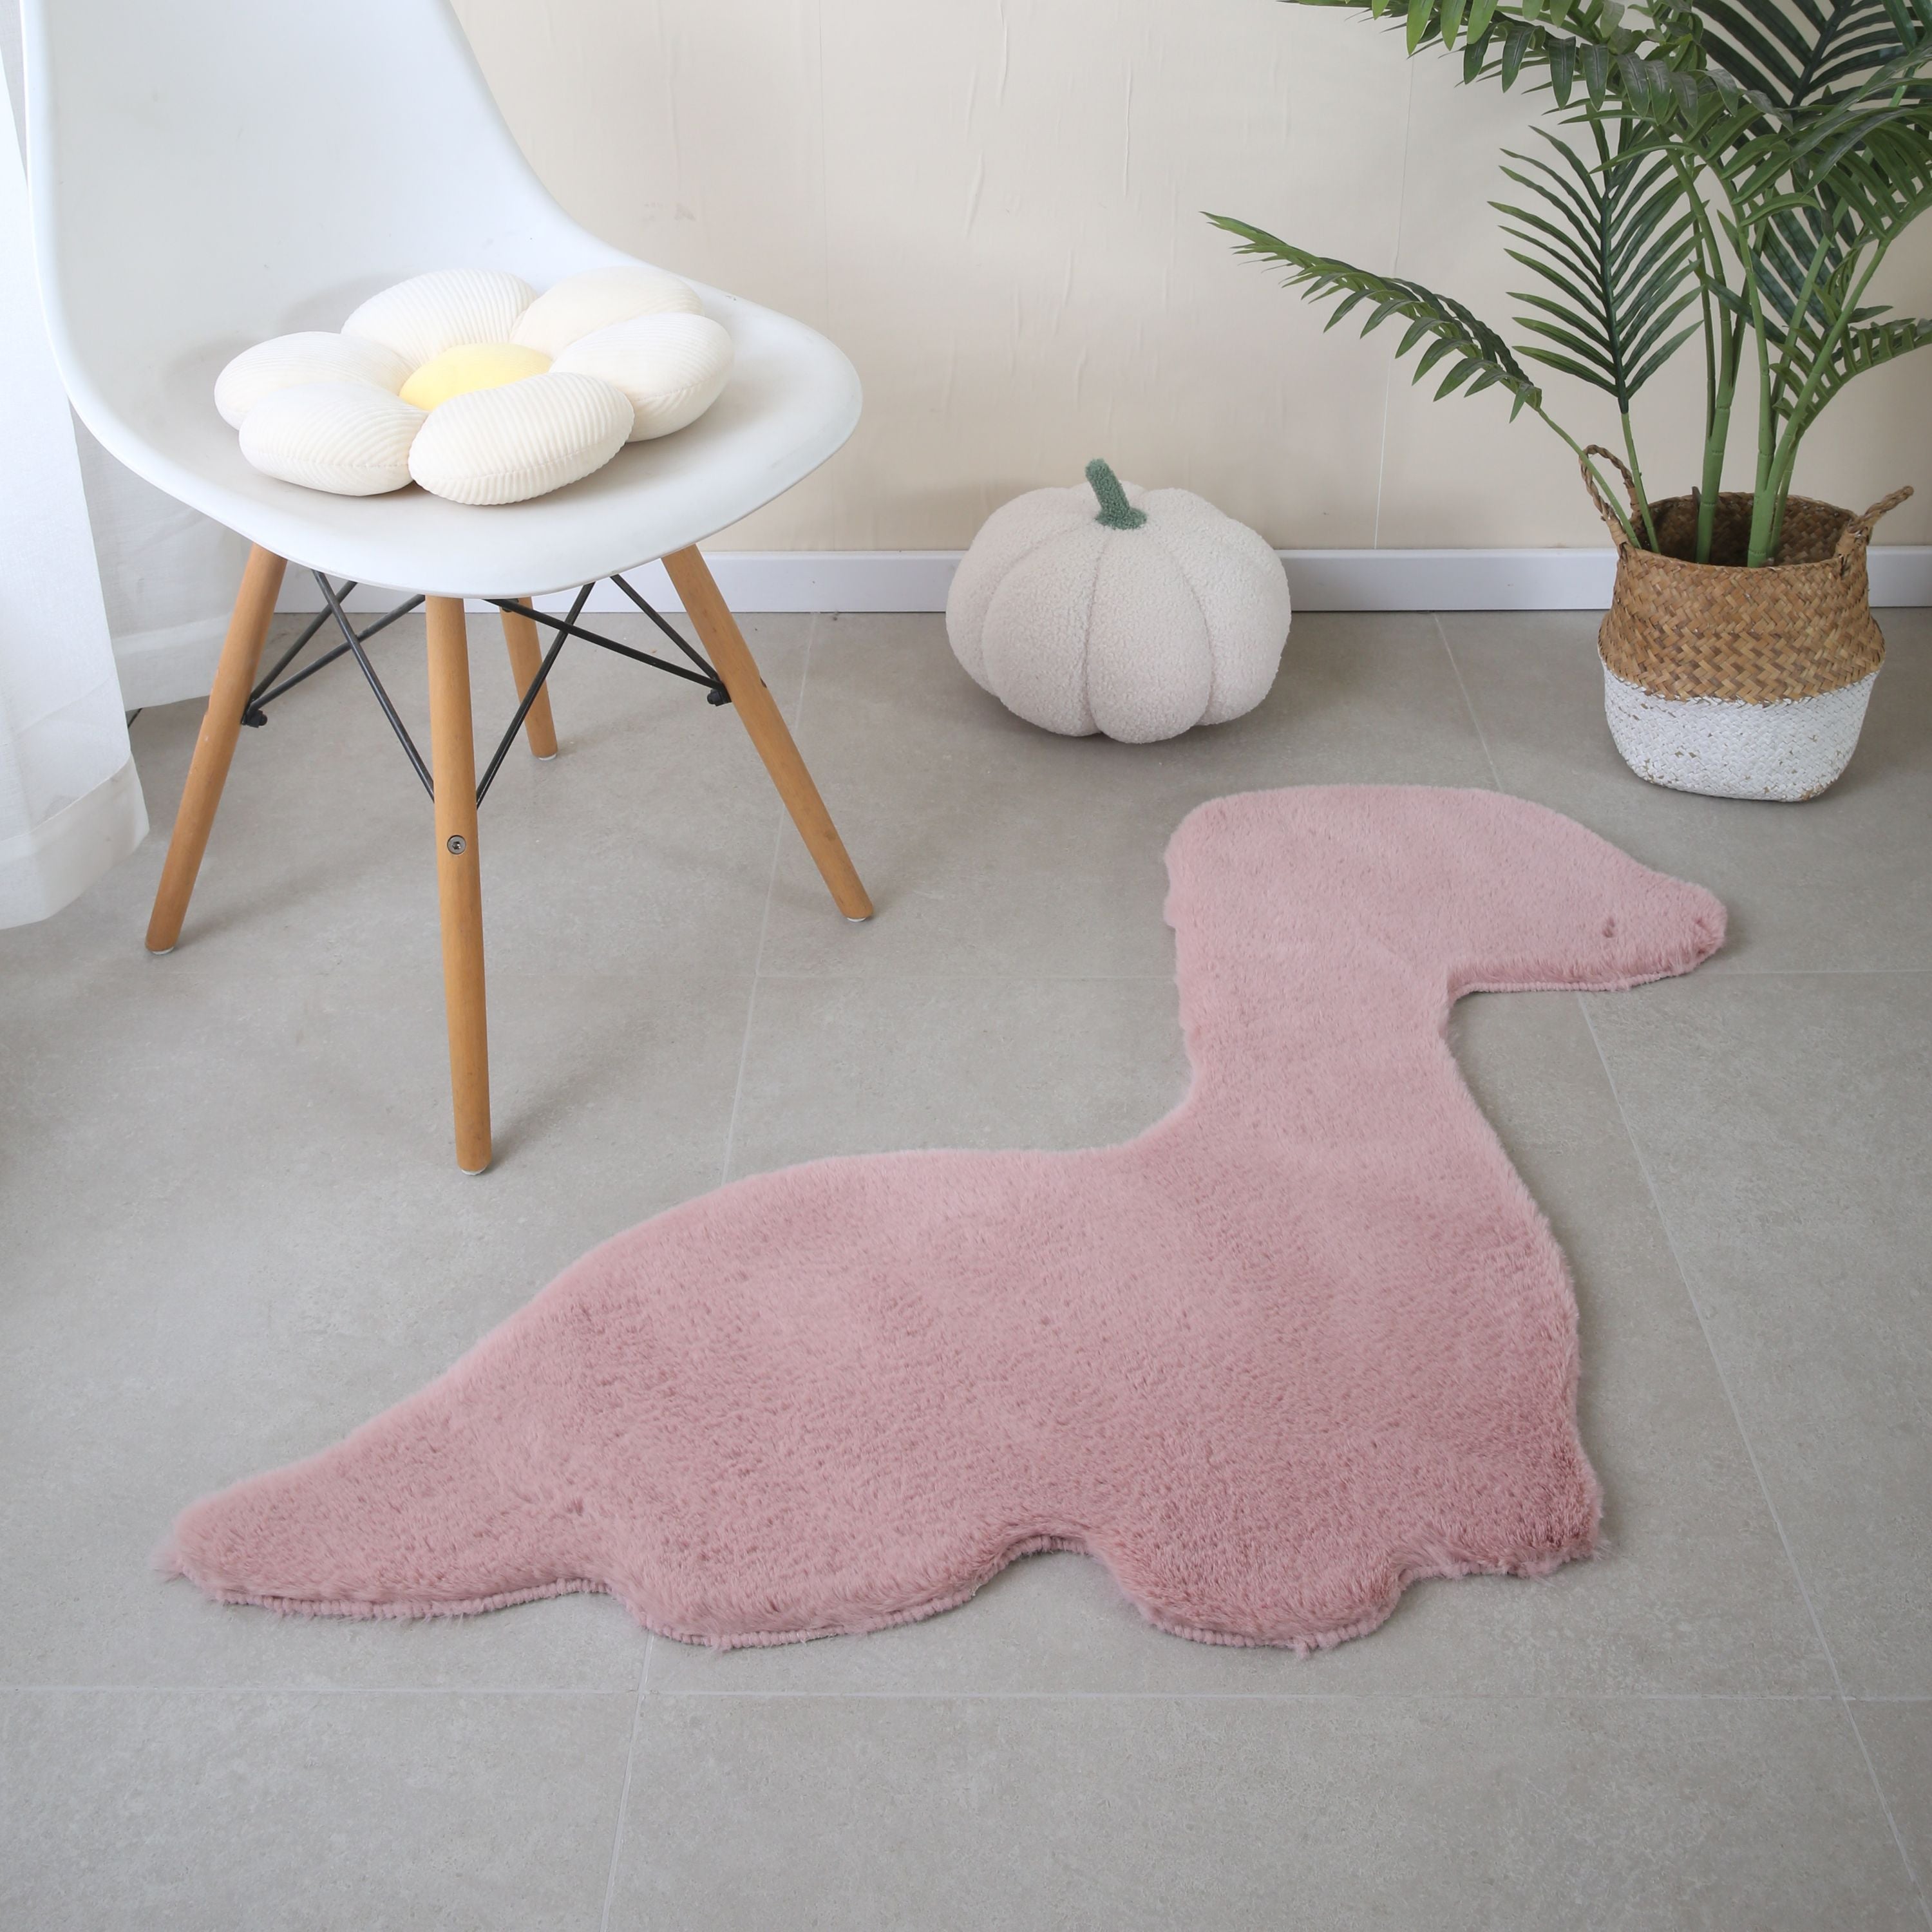 Teppich Plüsch Einfarbig Dino-form Kunstfell Kinderzimmer Super Weich Felloptik